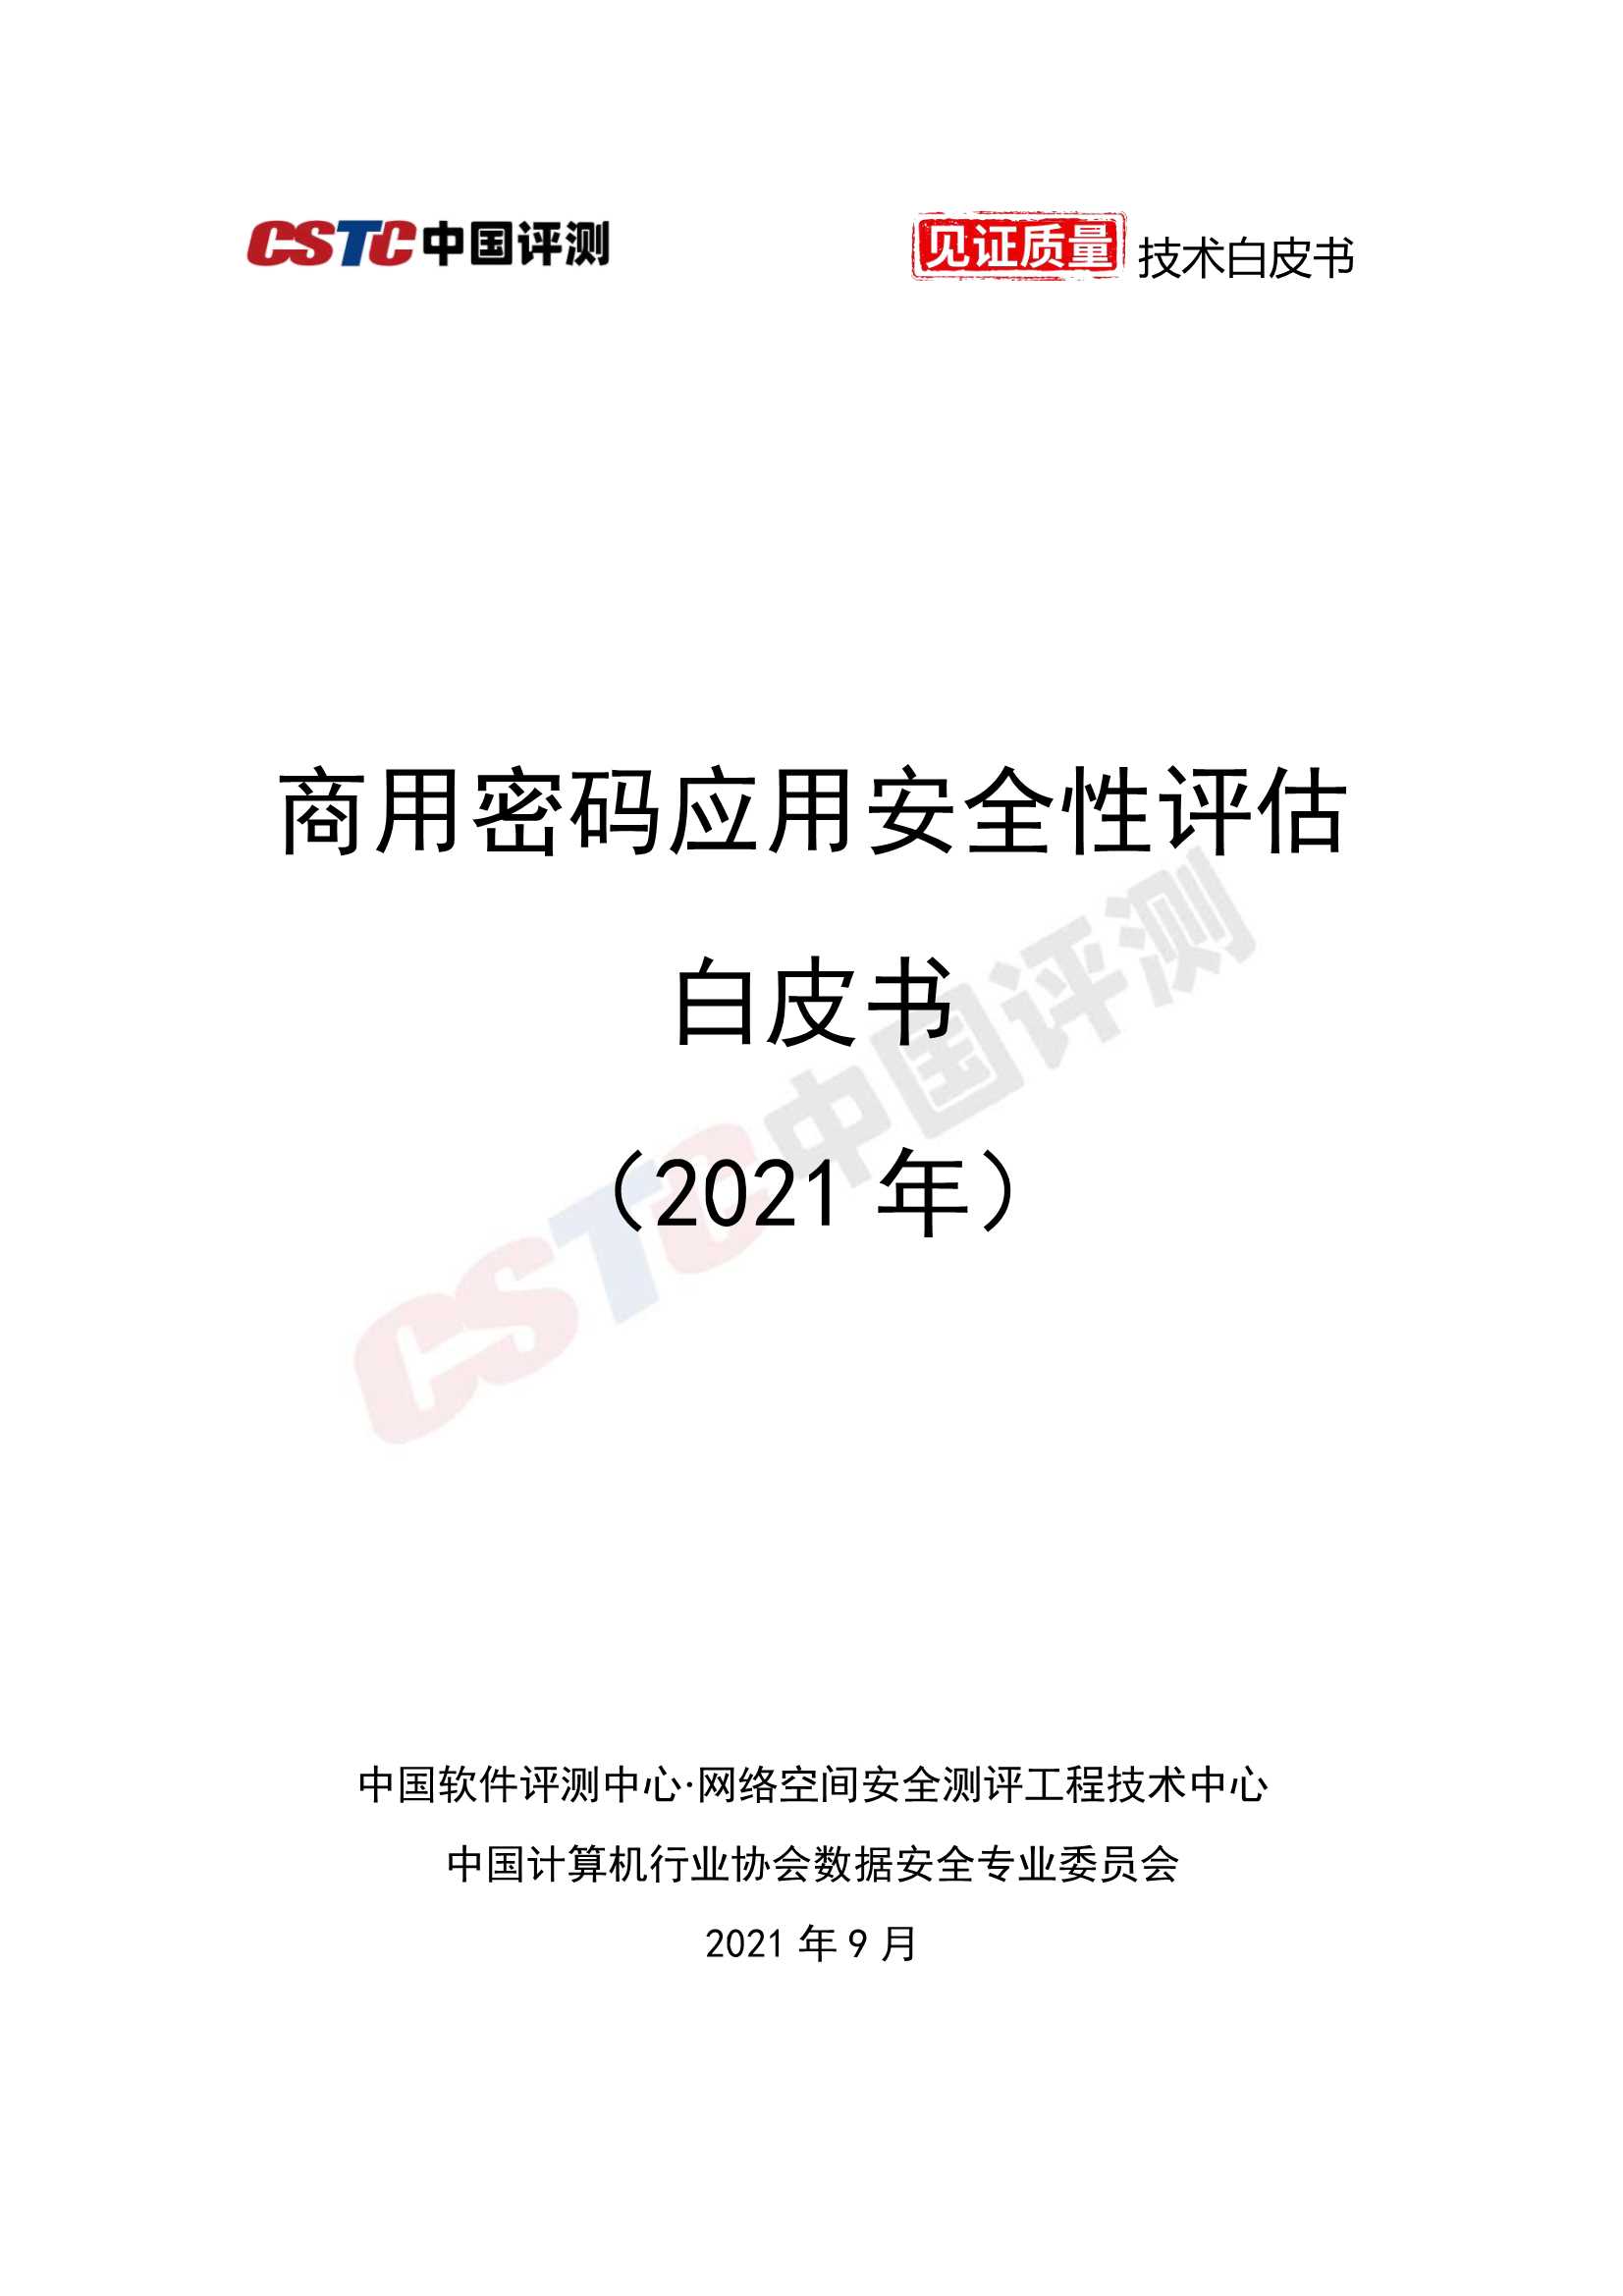 中国评测-商用密码应用安全性评估白皮书-2021.09-69页